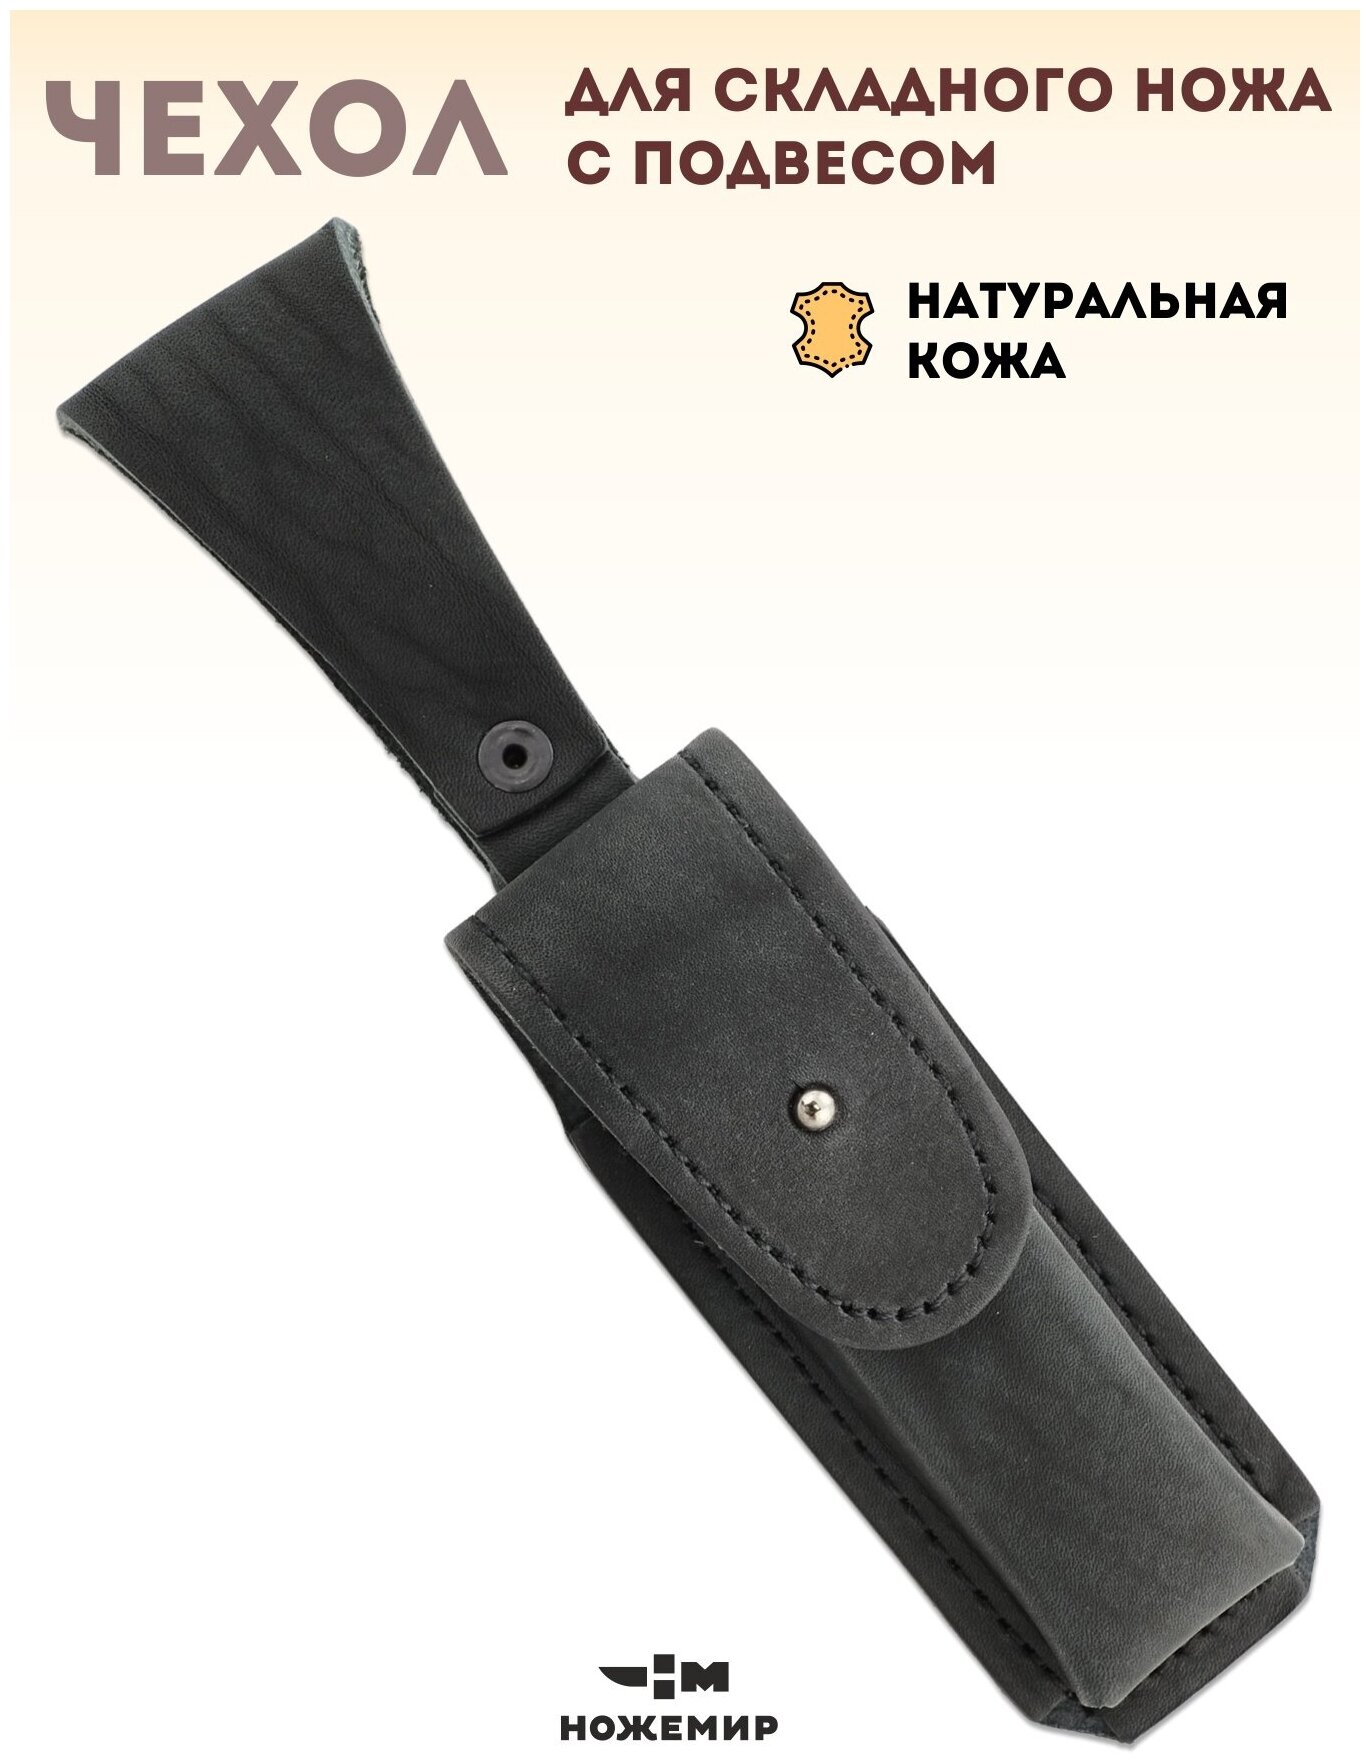 Чехол для складного ножа кожаный ЧДС №14п(ч) с подвесом